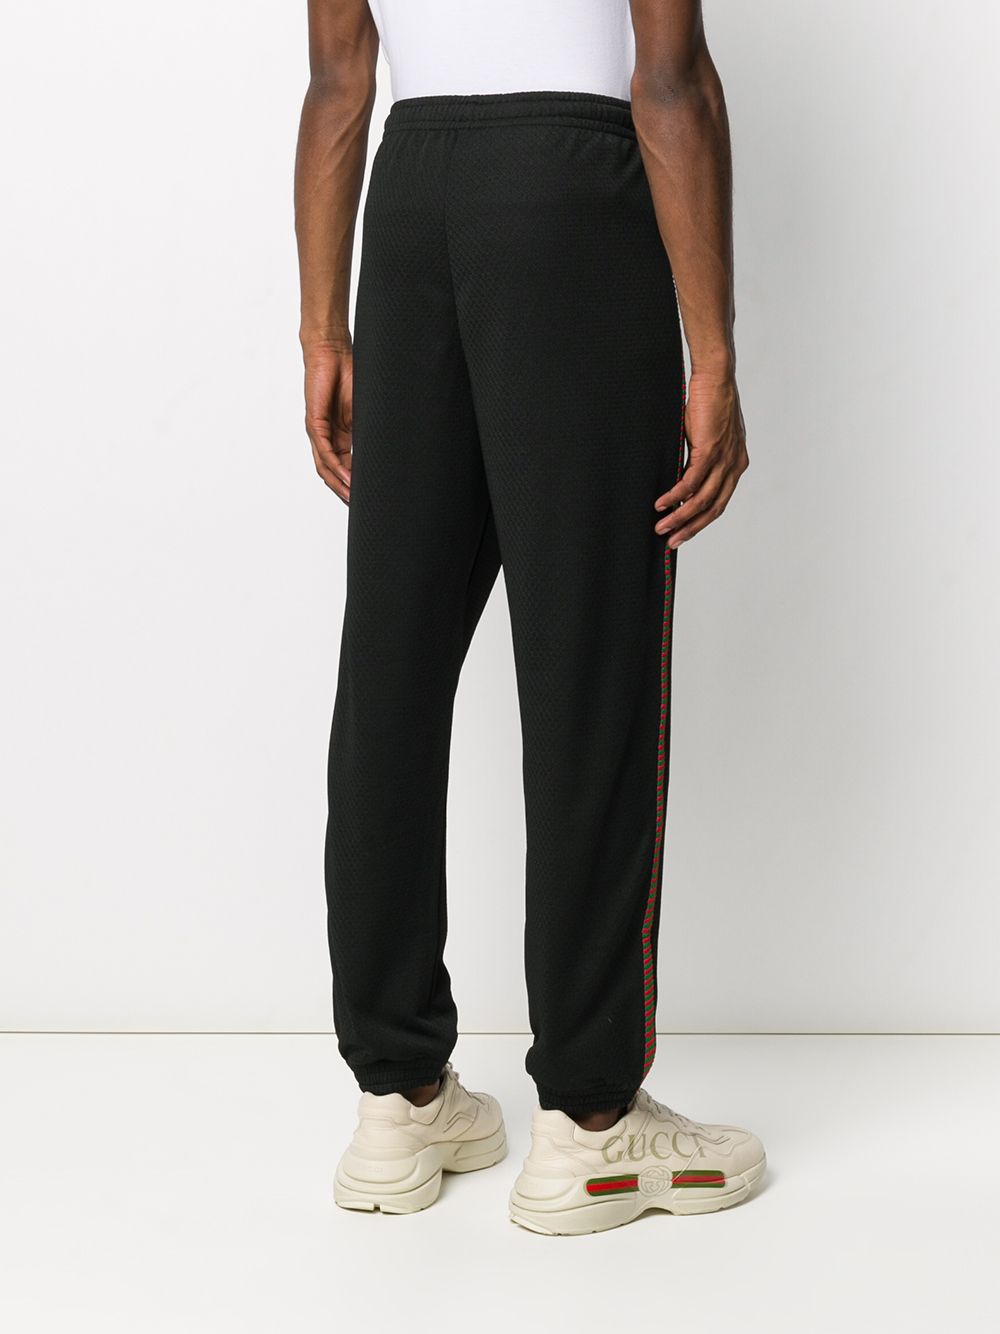 фото Gucci спортивные брюки с вышитым логотипом